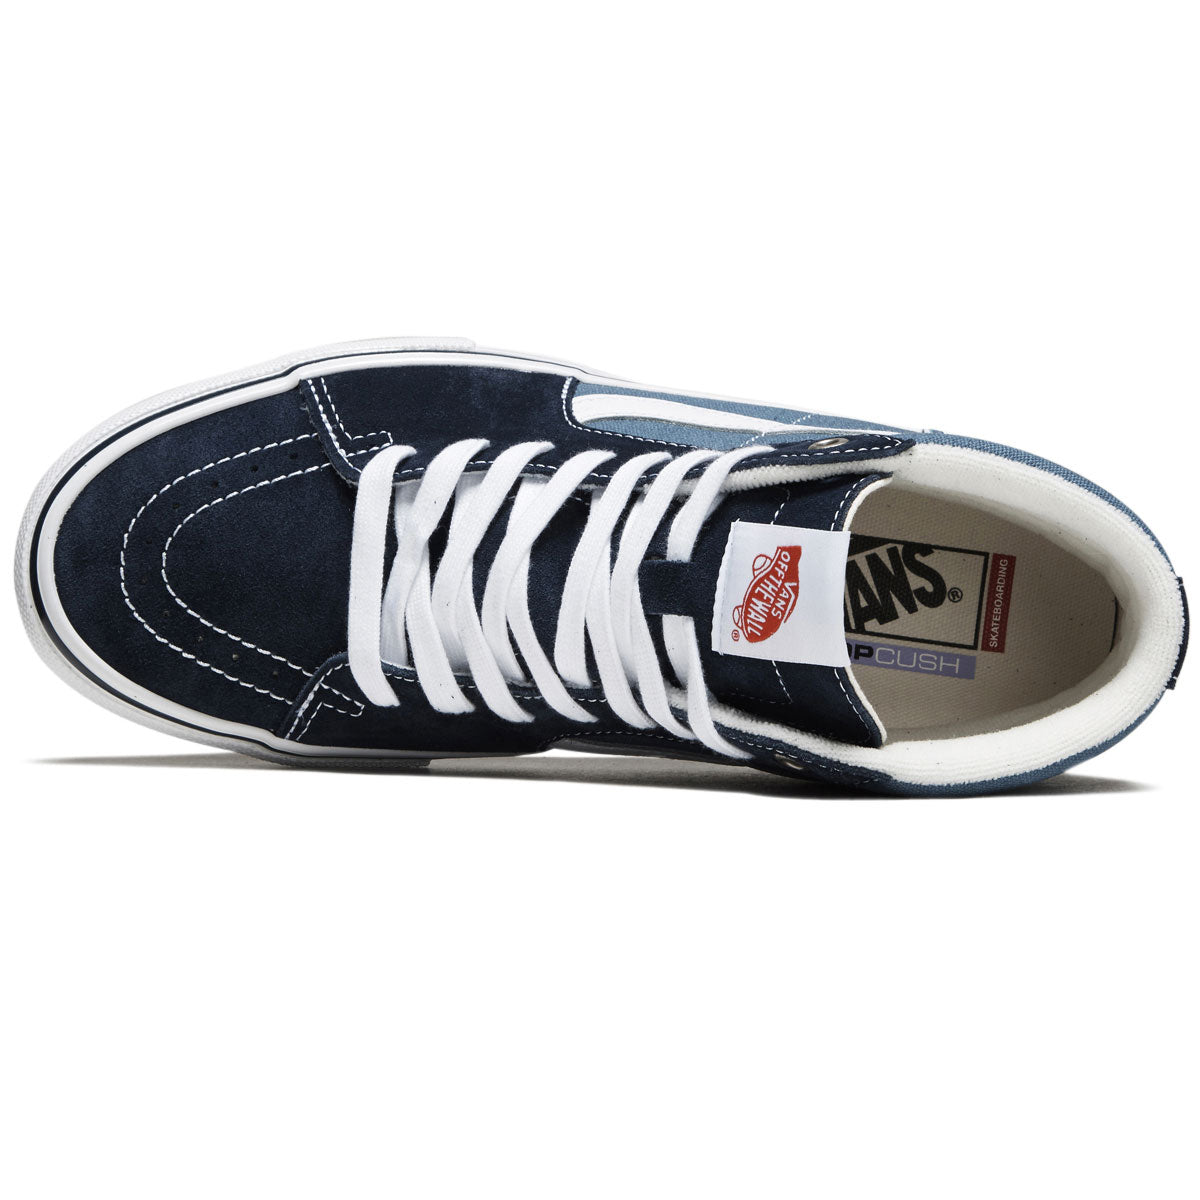 Vans Skate Sk8-Hi Shoes - Navy/White image 3